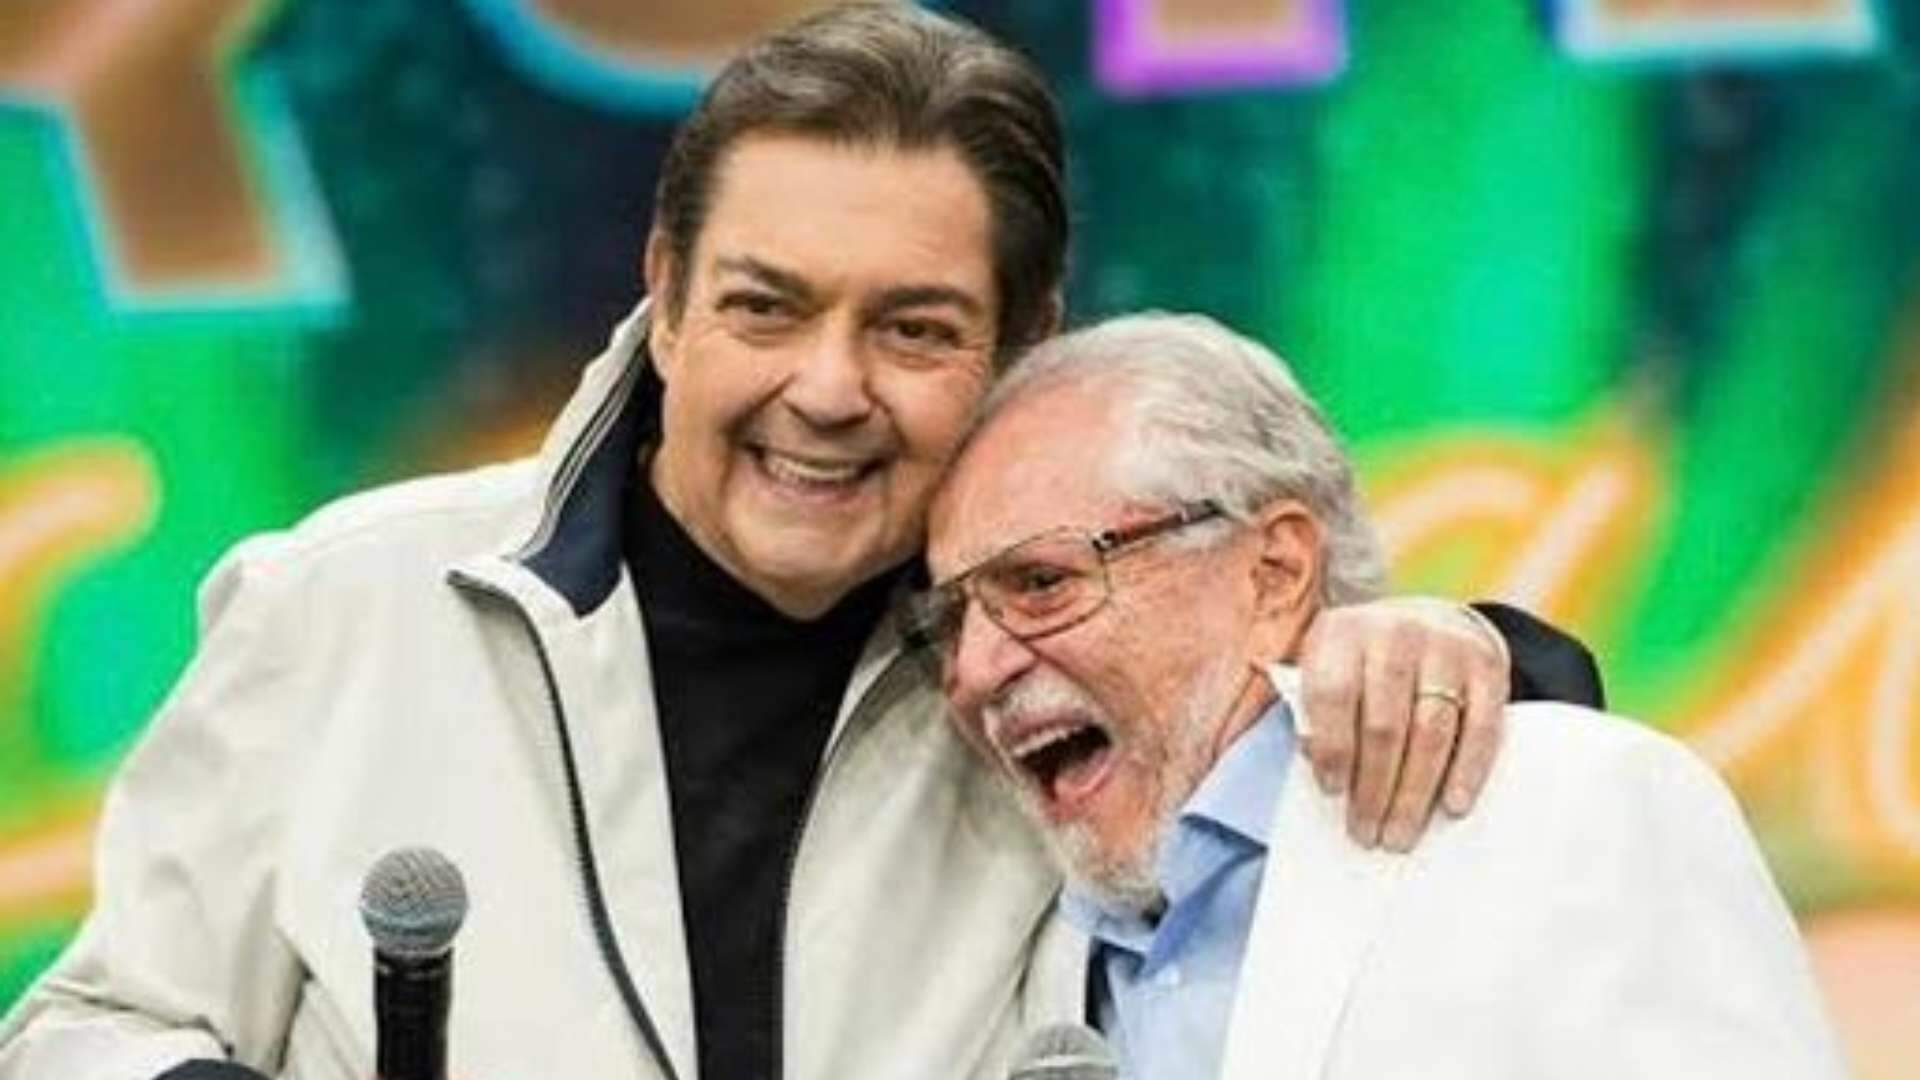 Carlos Alberto de Nóbrega posta homenagem emocionante para Faustão e preocupa os fãs: “Sem nunca divulgar” - Metropolitana FM